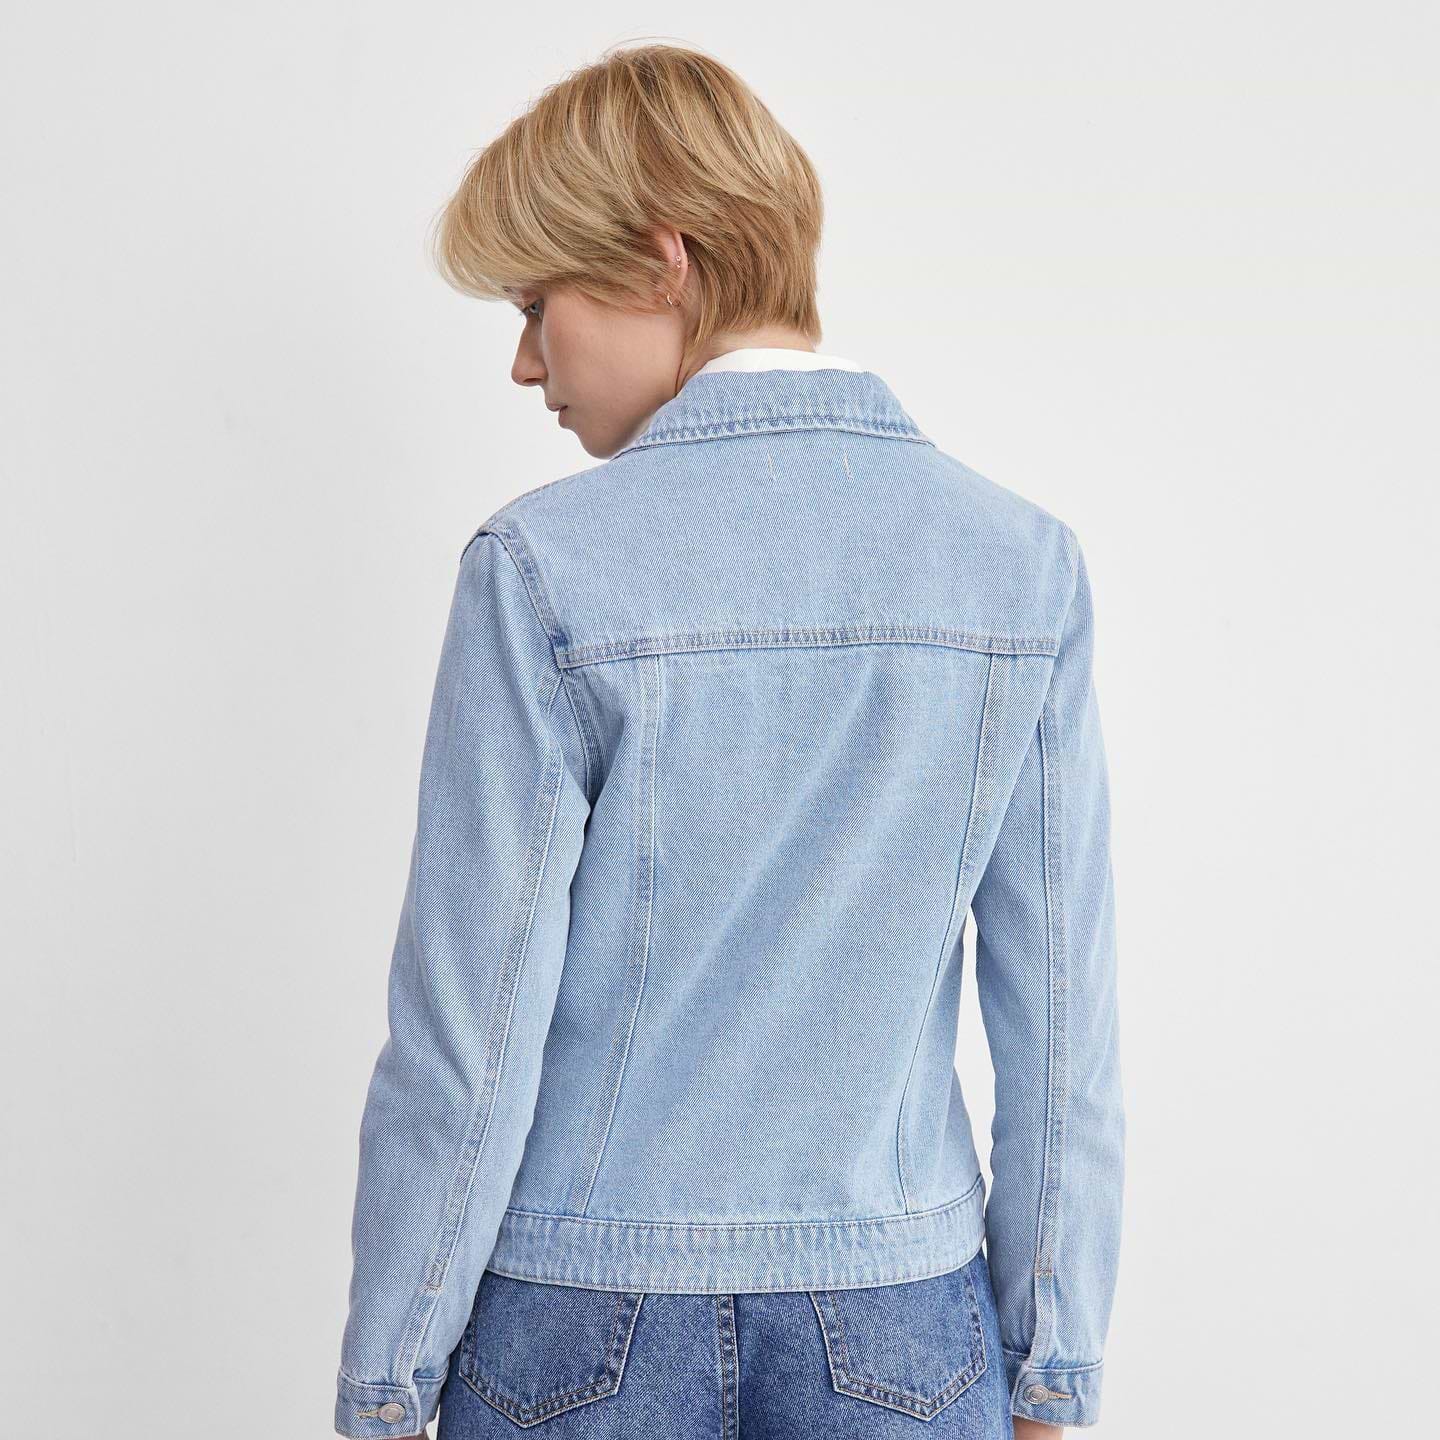 #CastroJeans ג׳קט ג׳ינס שהוא Must בארון מחכה לך בחנויות ובאתר, ב-3 סגנונות לבחור מתוכם 🛍 #CastroFashion